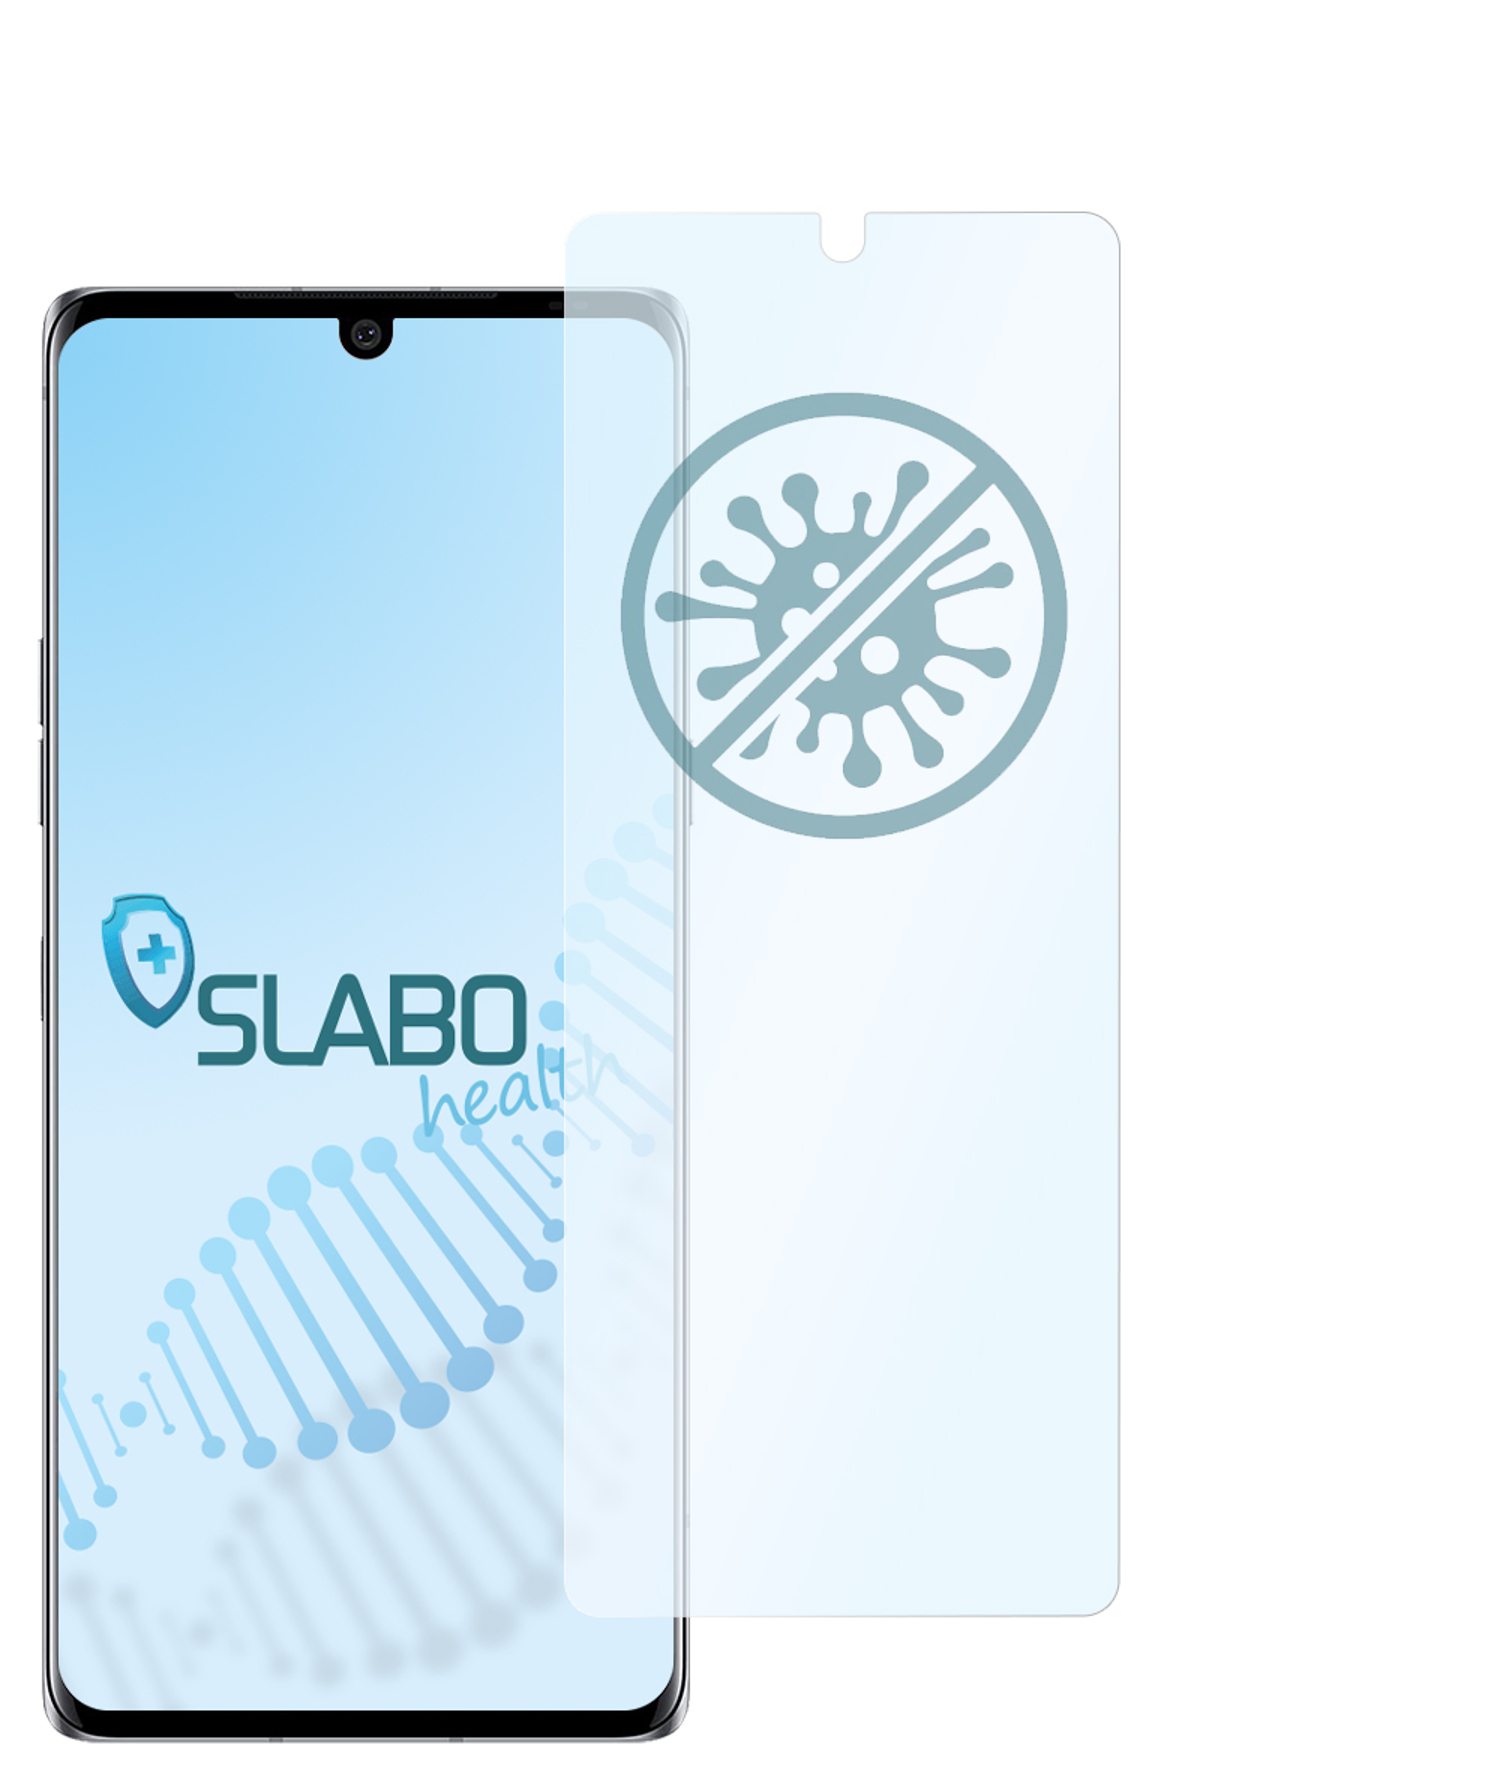 Velvet Hybridglasfolie LG Displayschutz(für 5G)) flexible antibakterielle SLABO (4G |